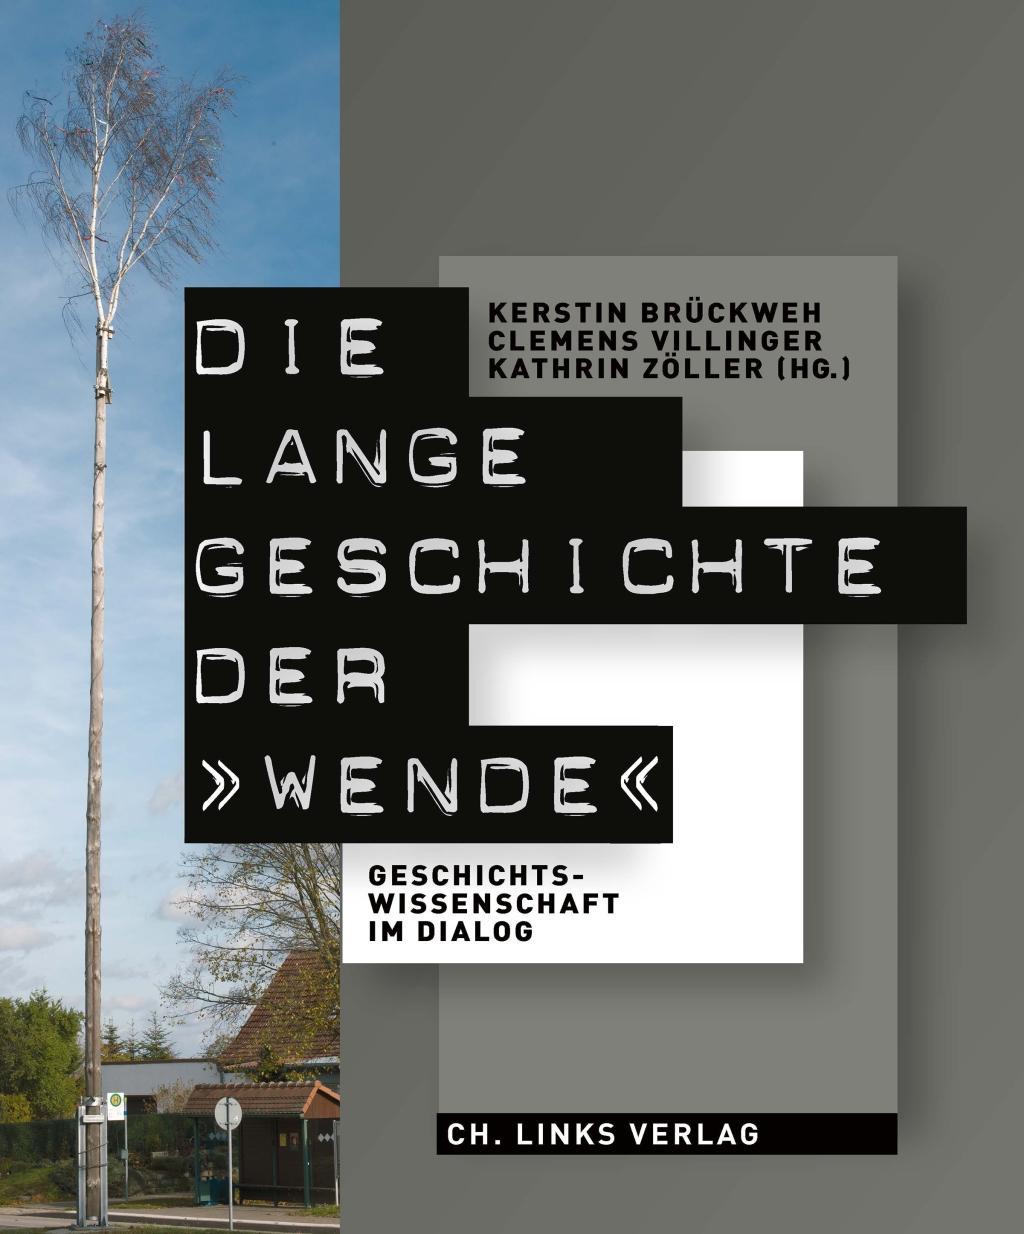 Kniha Die lange Geschichte der »Wende« Clemens Villinger